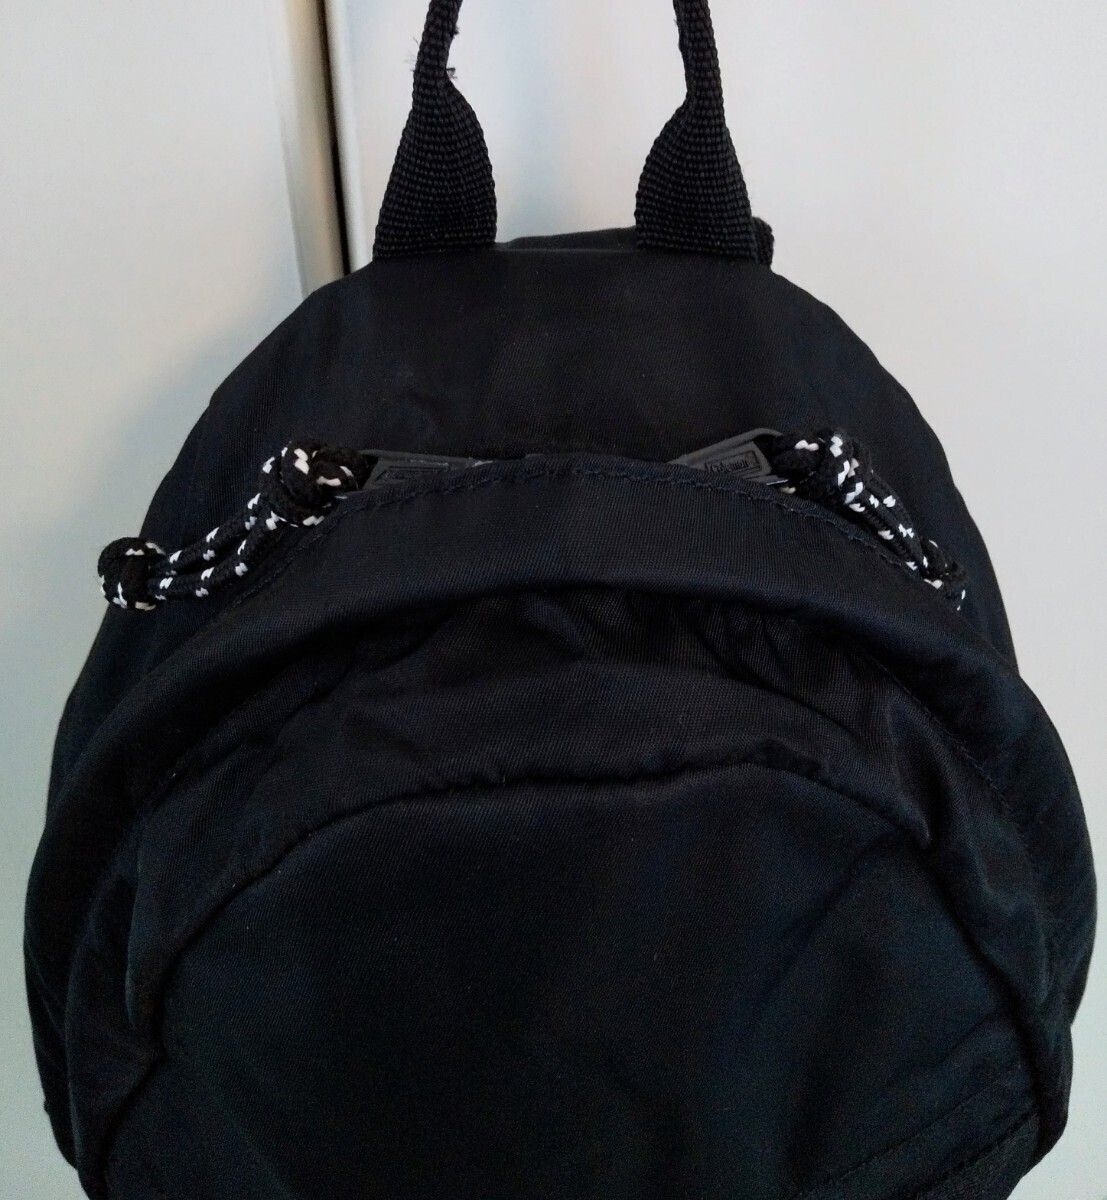 [ regular goods ]Coleman/ Coleman War car sling bag Black/ black diagonal .. shoulder bag one shoulder black man woman 2000037745